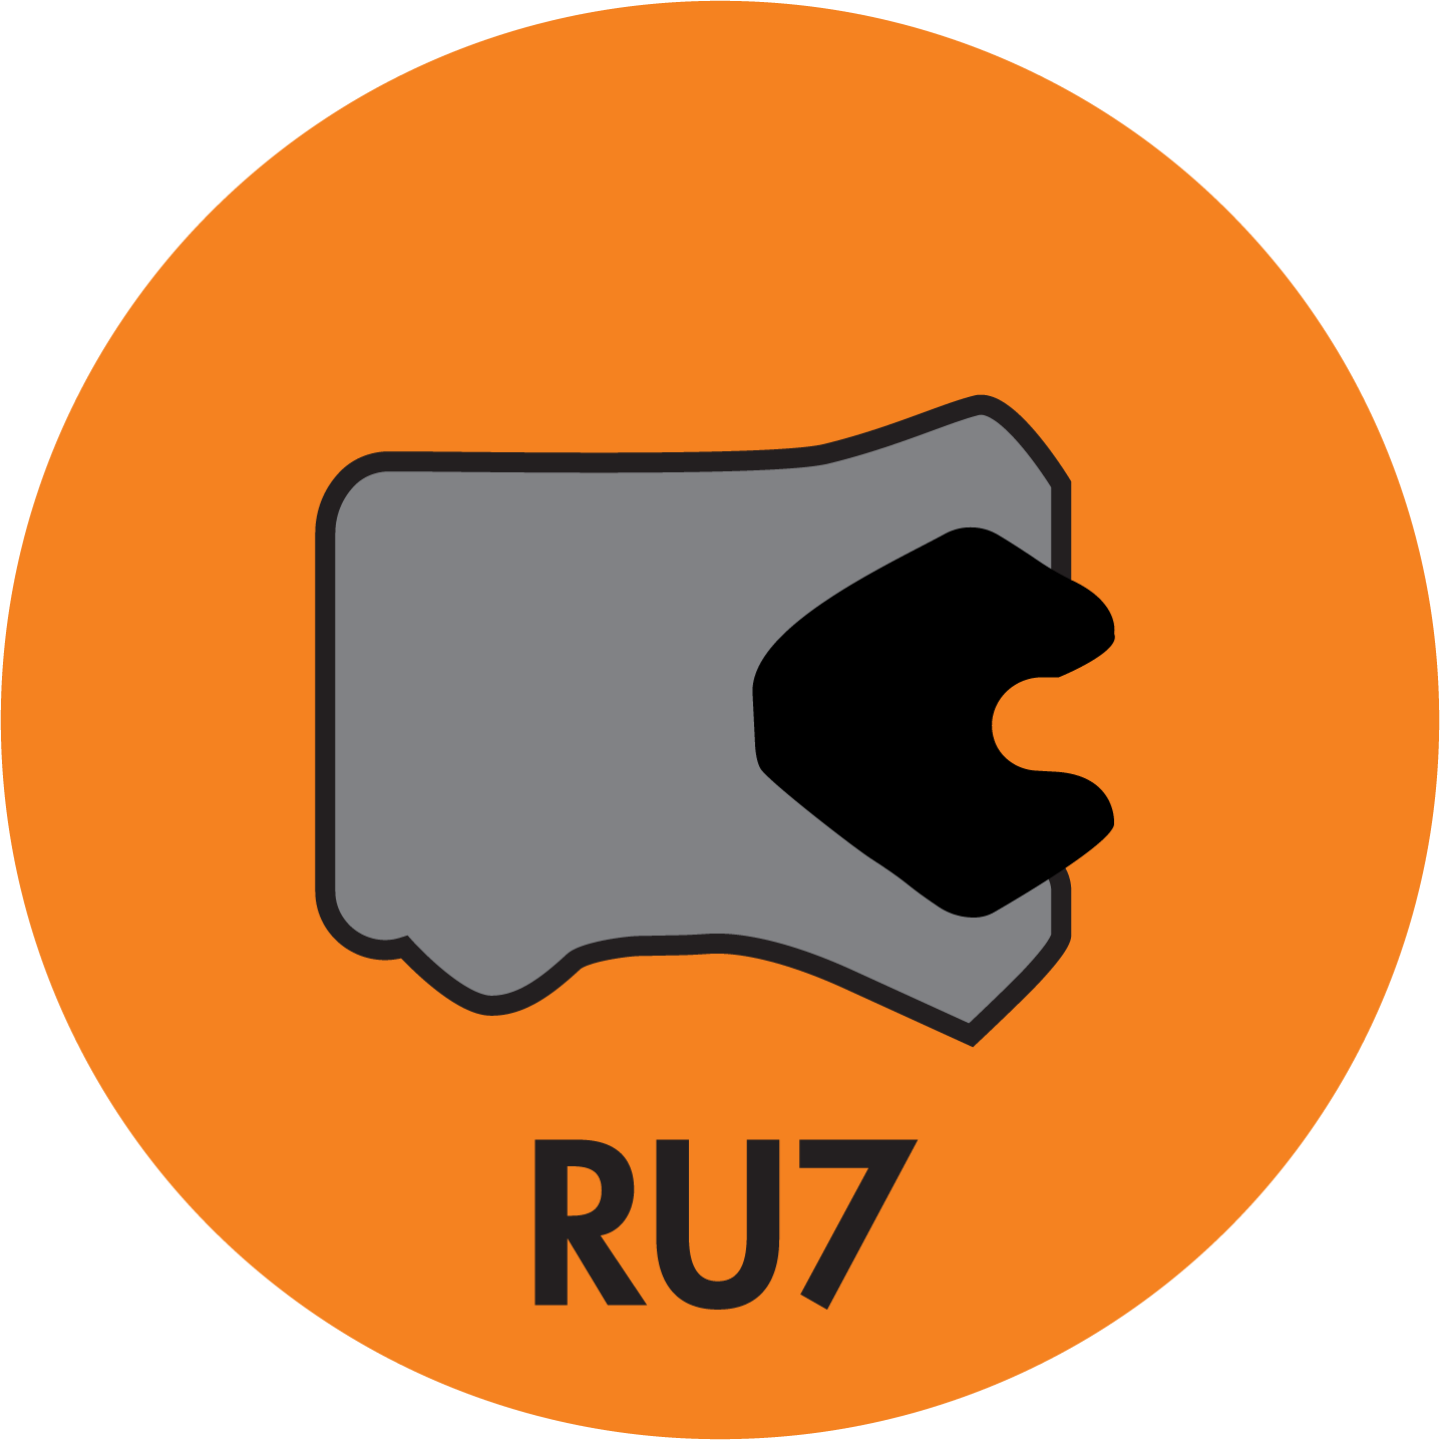 RU7 TWIN LIP ROD (LOADED) U-CUP (AU+NBR) - RU7-25001750-375-P92E Image 1